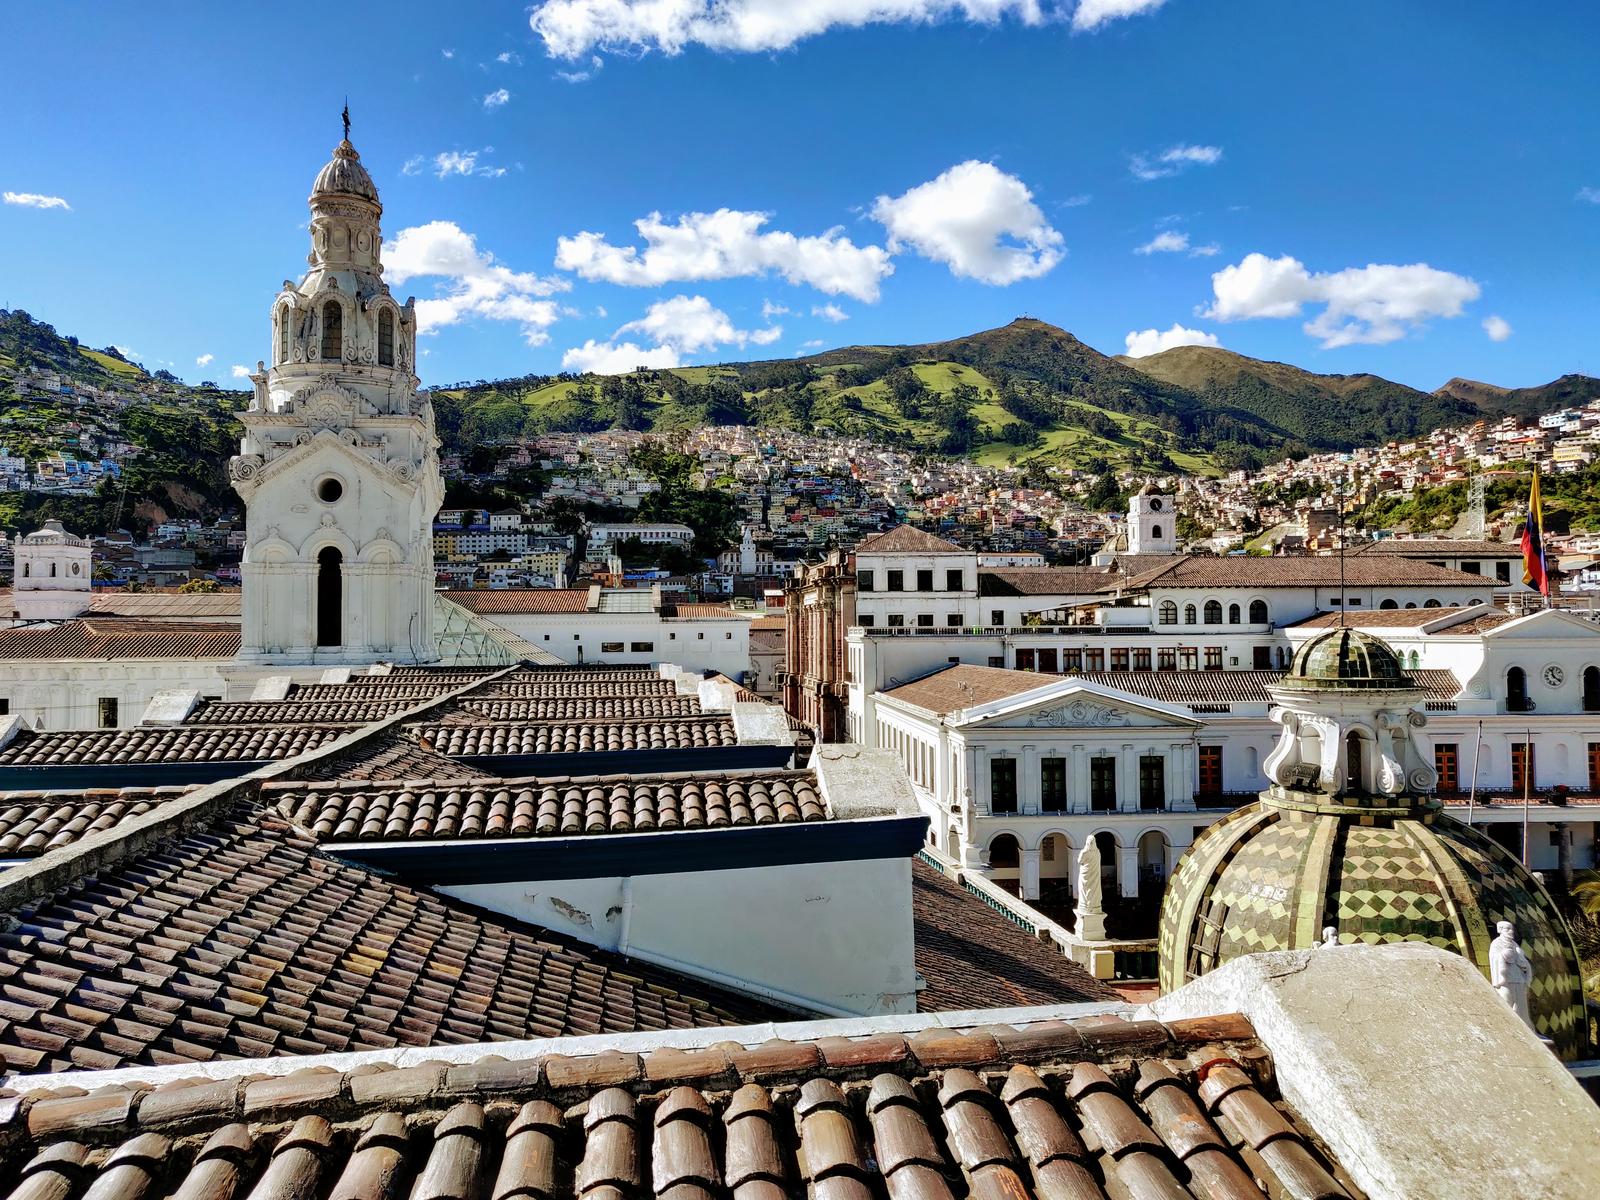 Second Largest Cities Quito, Ecuador